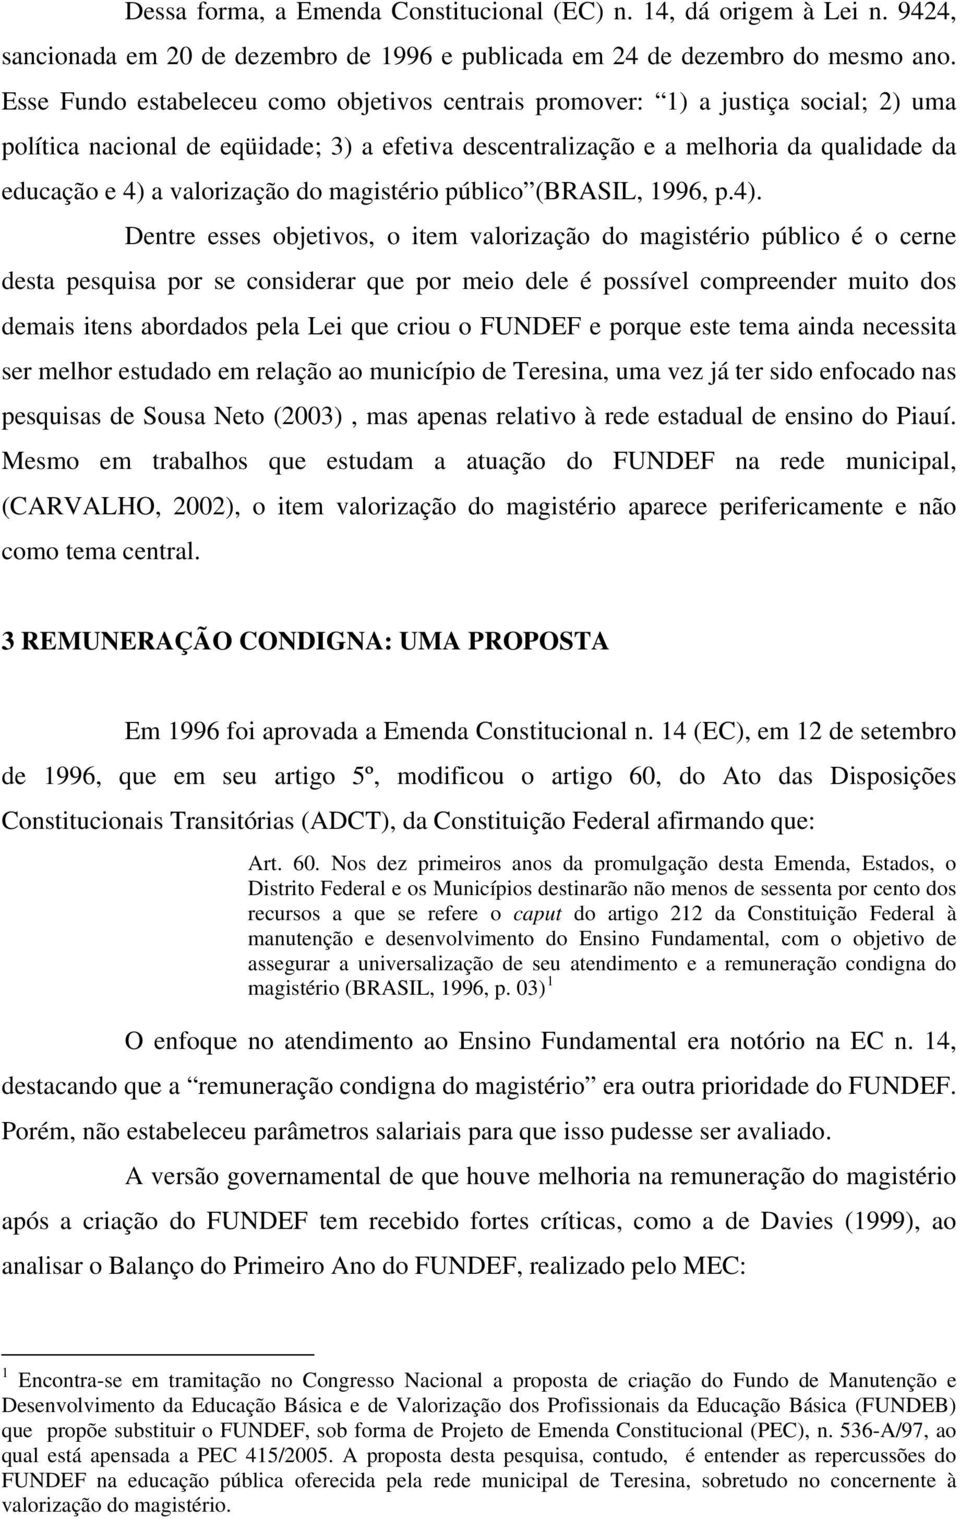 valorização do magistério público (BRASIL, 1996, p.4).